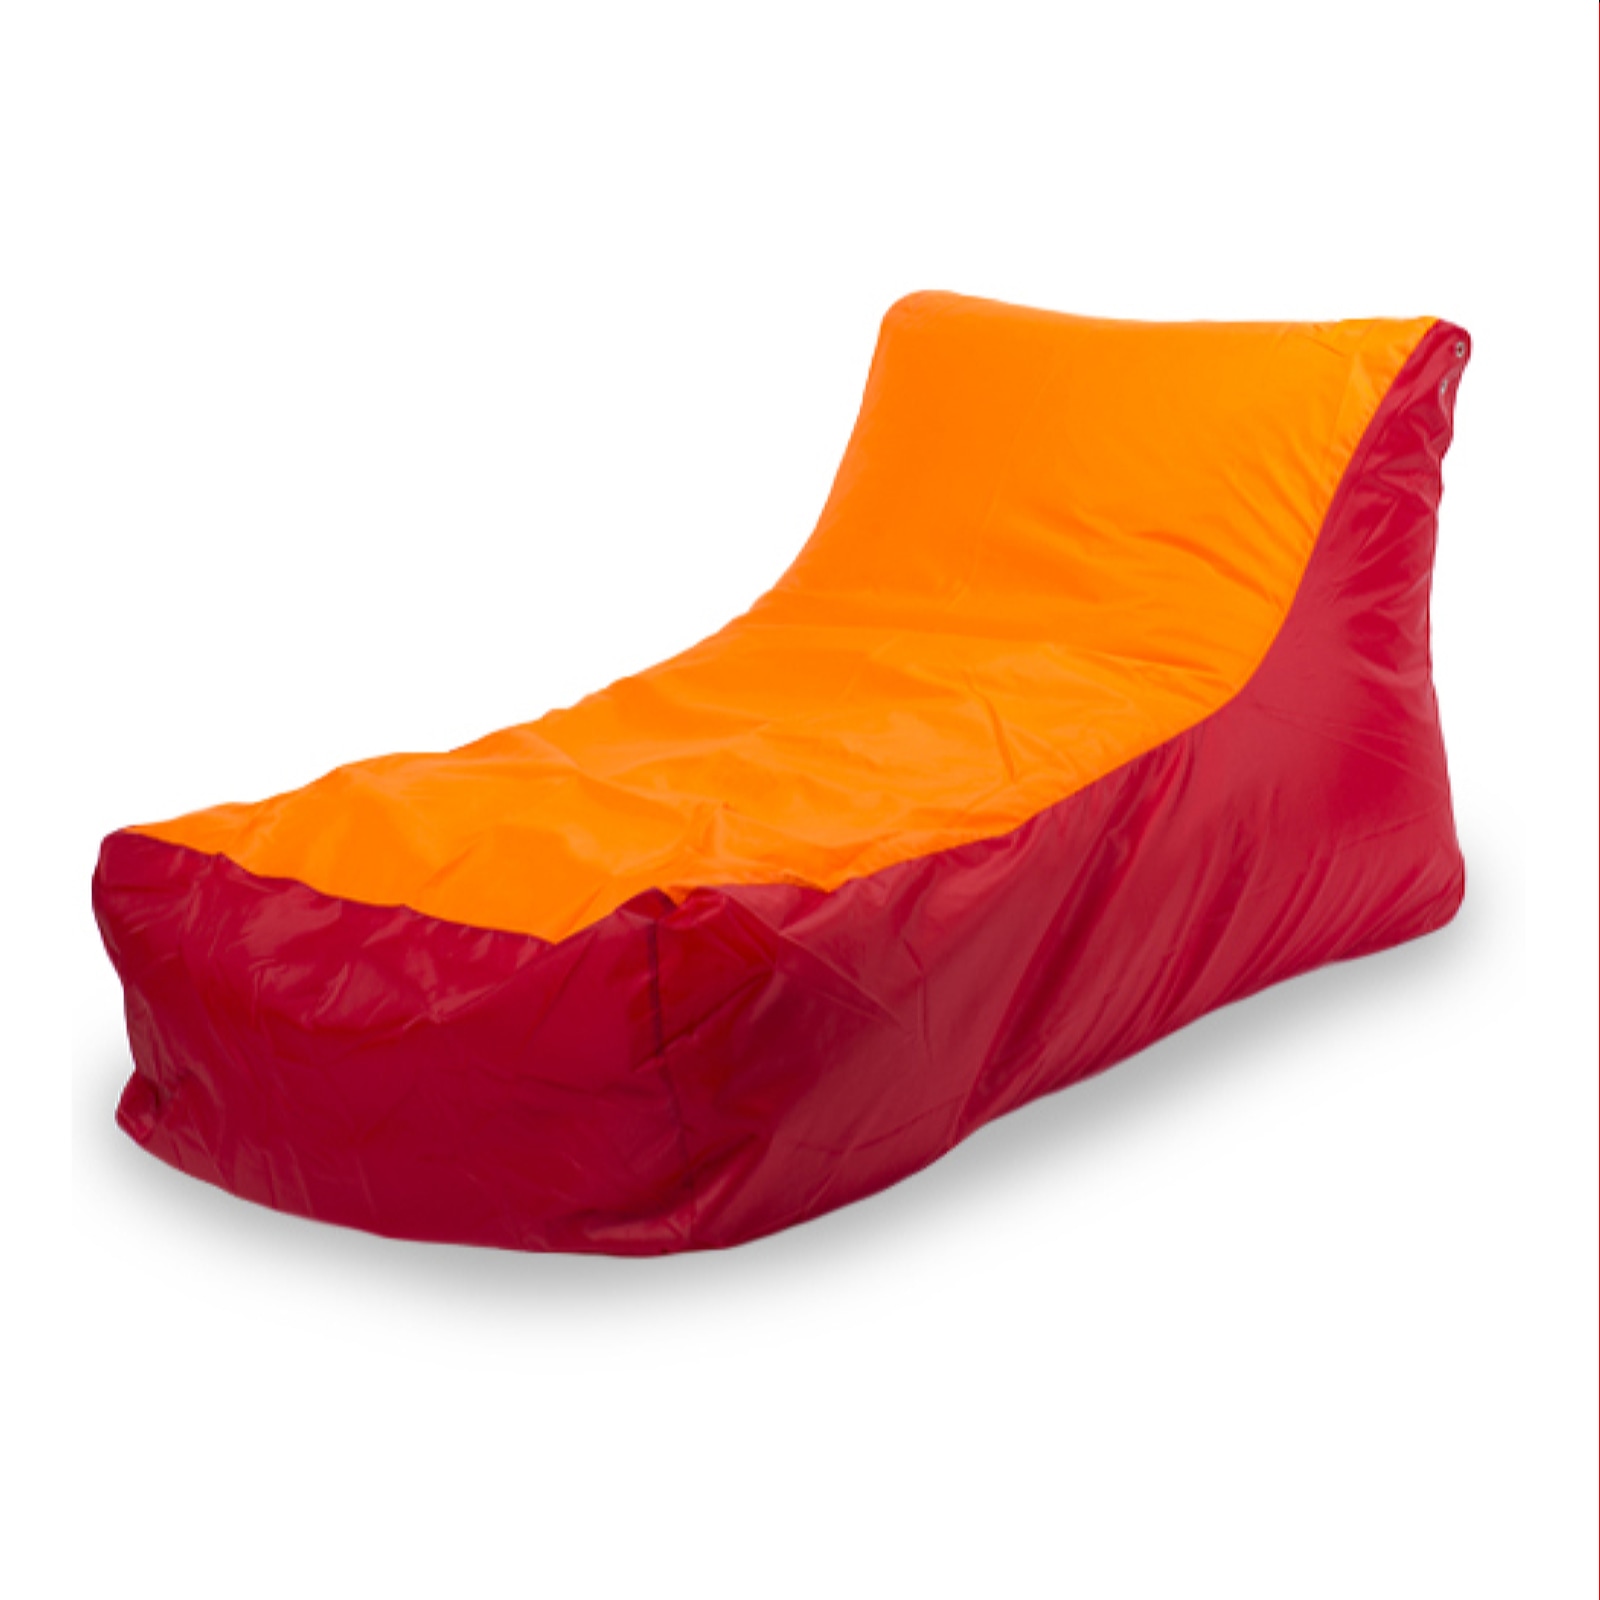 фото Бескаркасный модульный диван пуффбери кушетка one size, оксфорд, красный/оранжевый